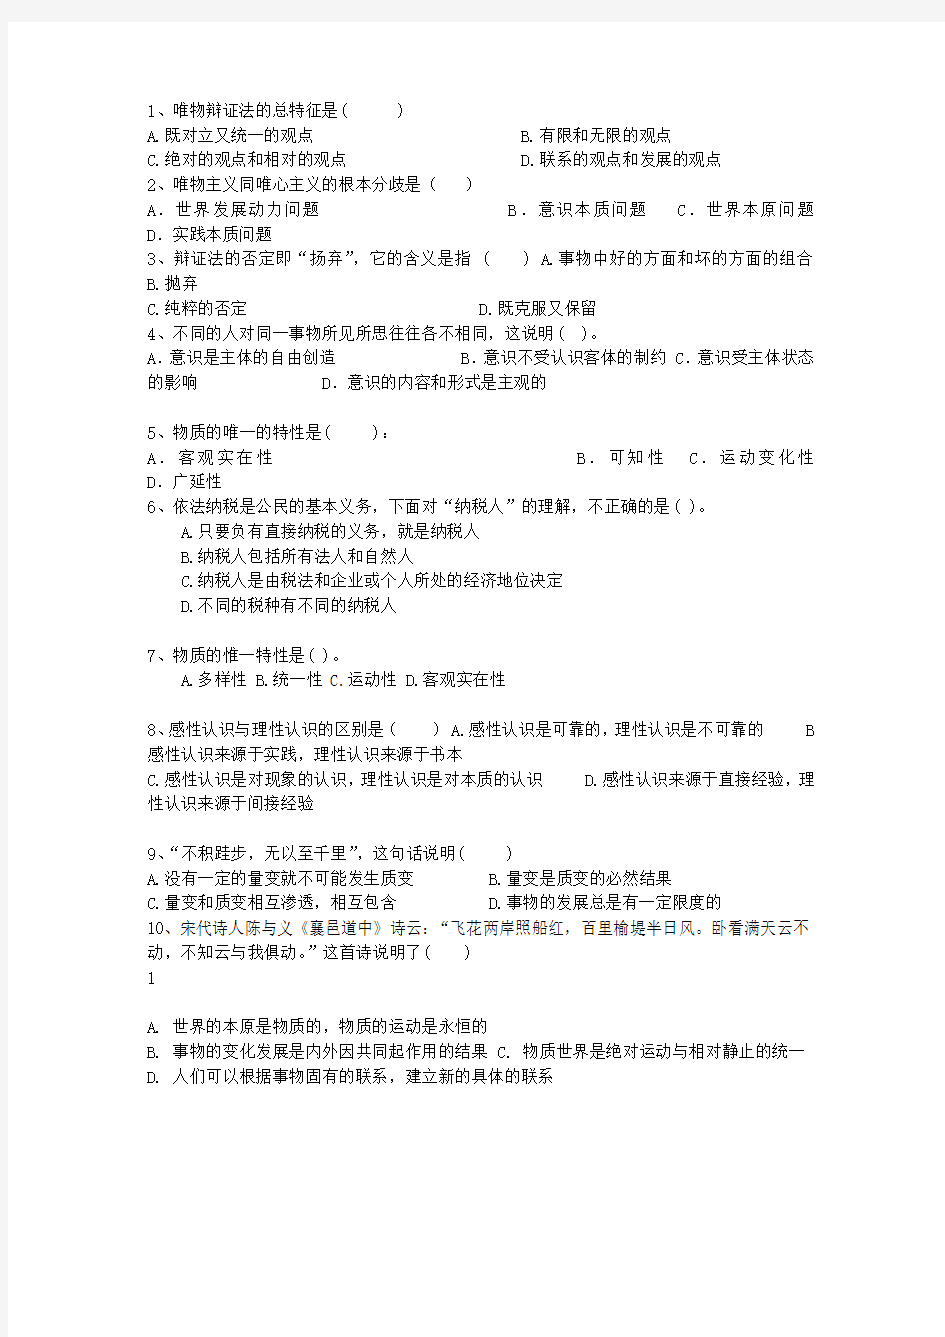 2015西藏自治区公务员考试公共基础知识最新考试试题库(完整版)